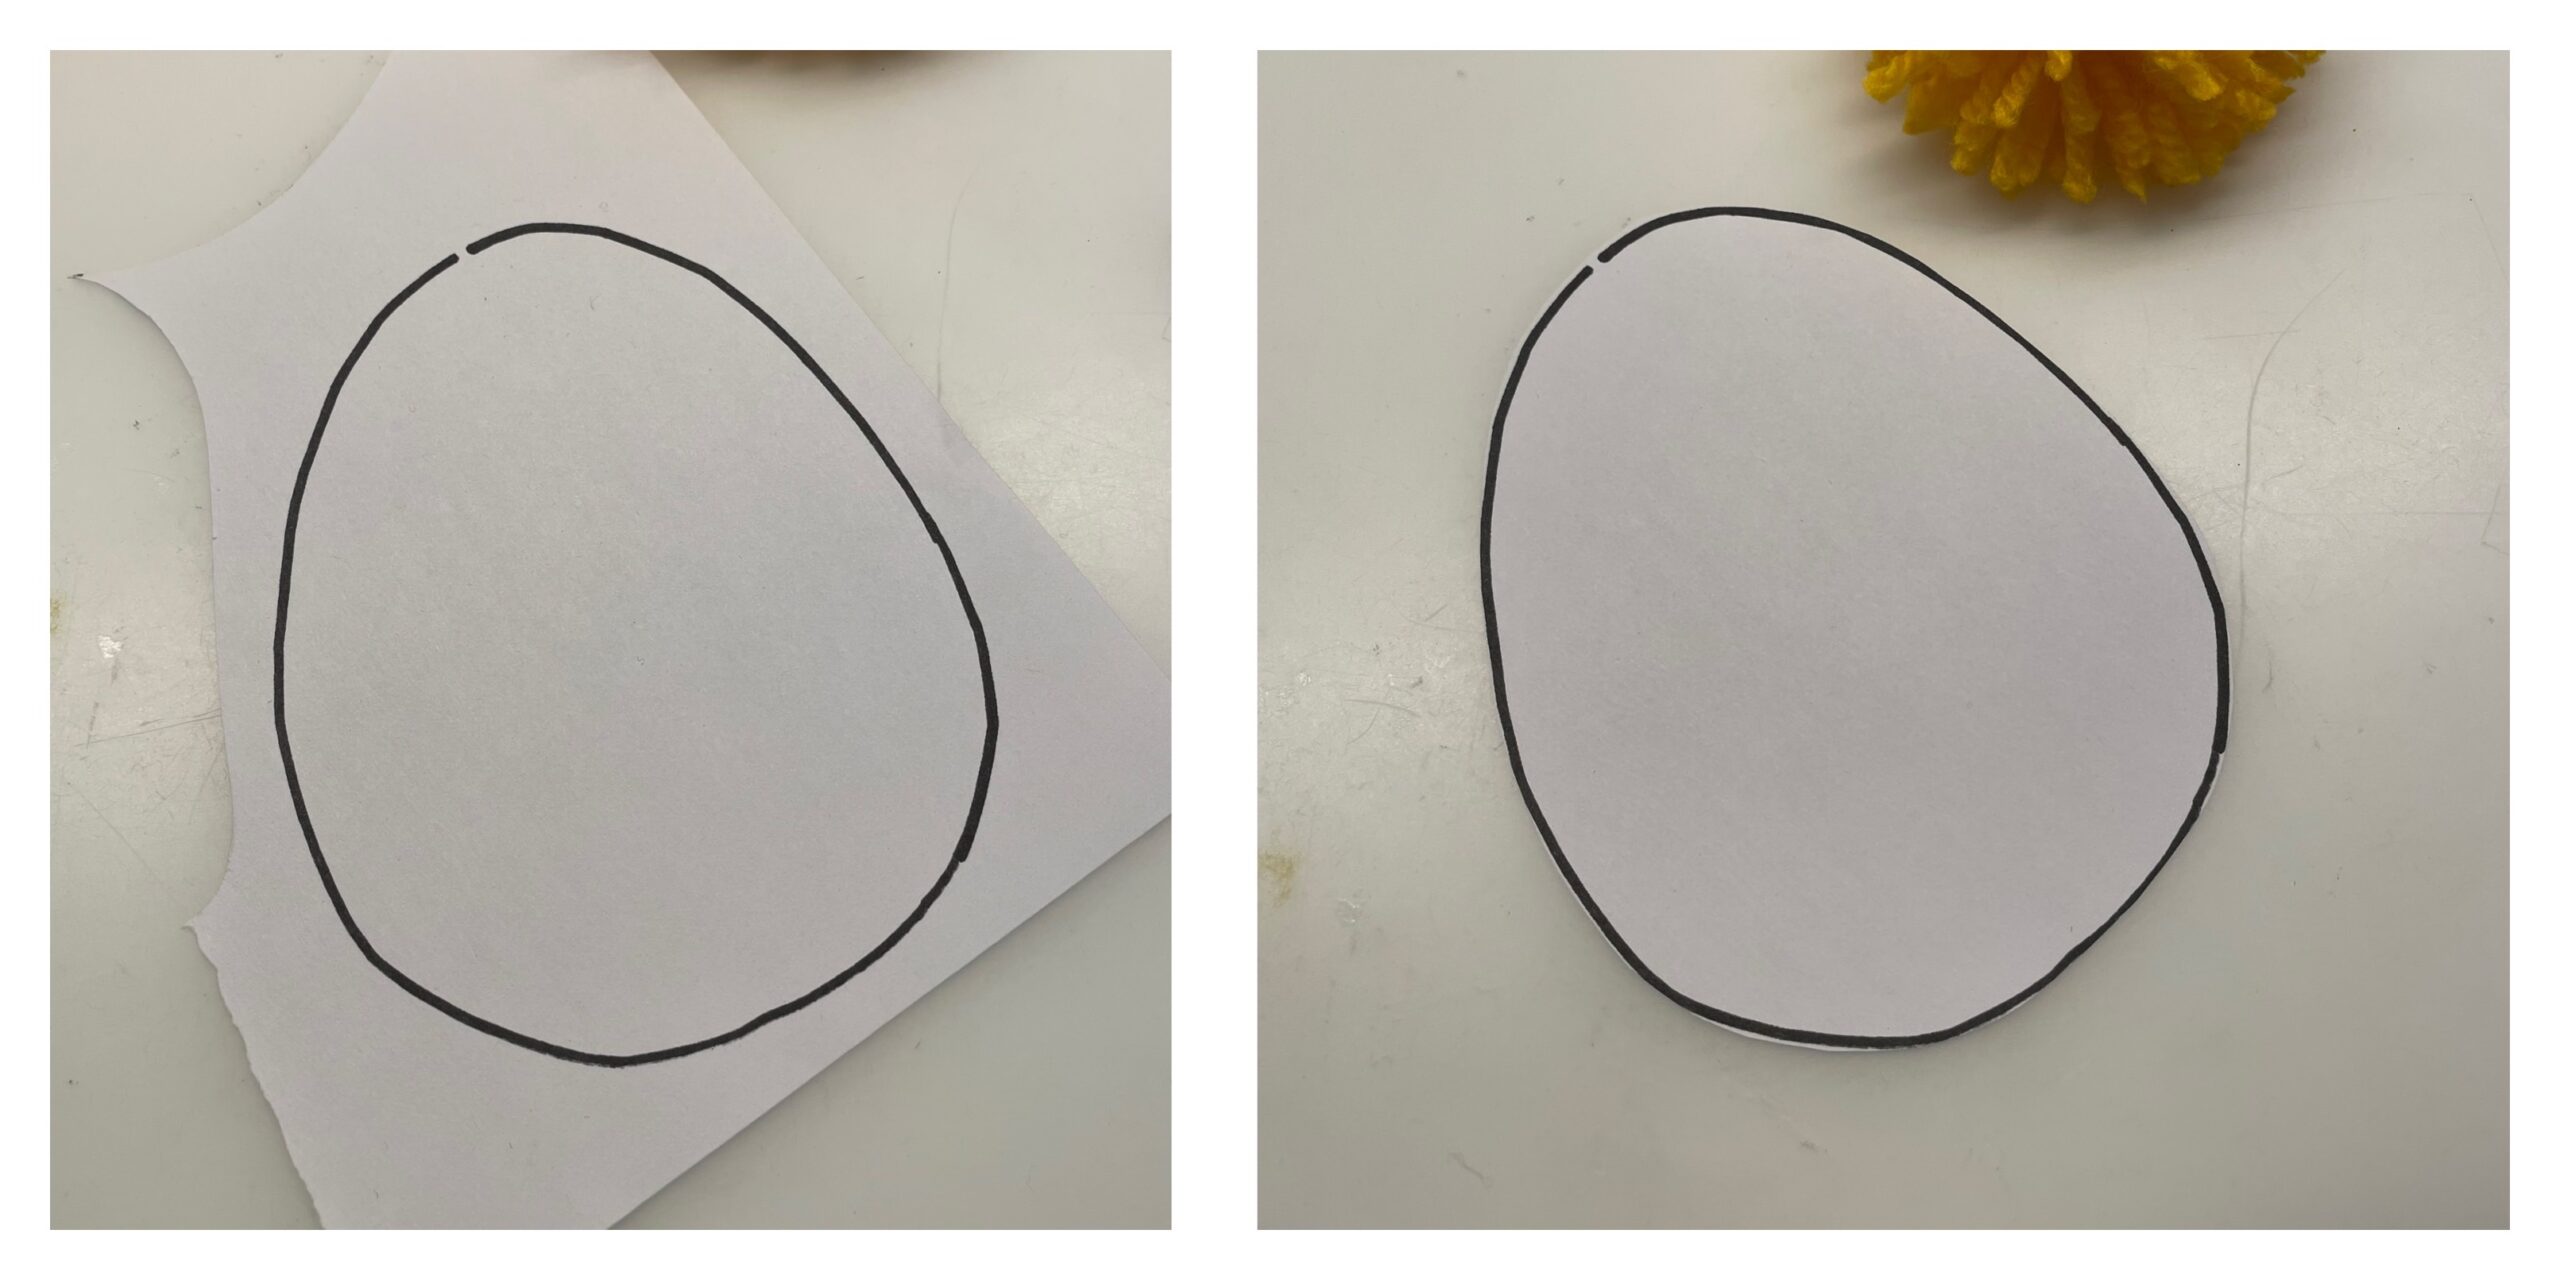 Bild zum Schritt 7 für das Bastel- und DIY-Abenteuer für Kinder: 'Anschließend malt ihr auf einen weißen Fotokarton ein Ei auf....'